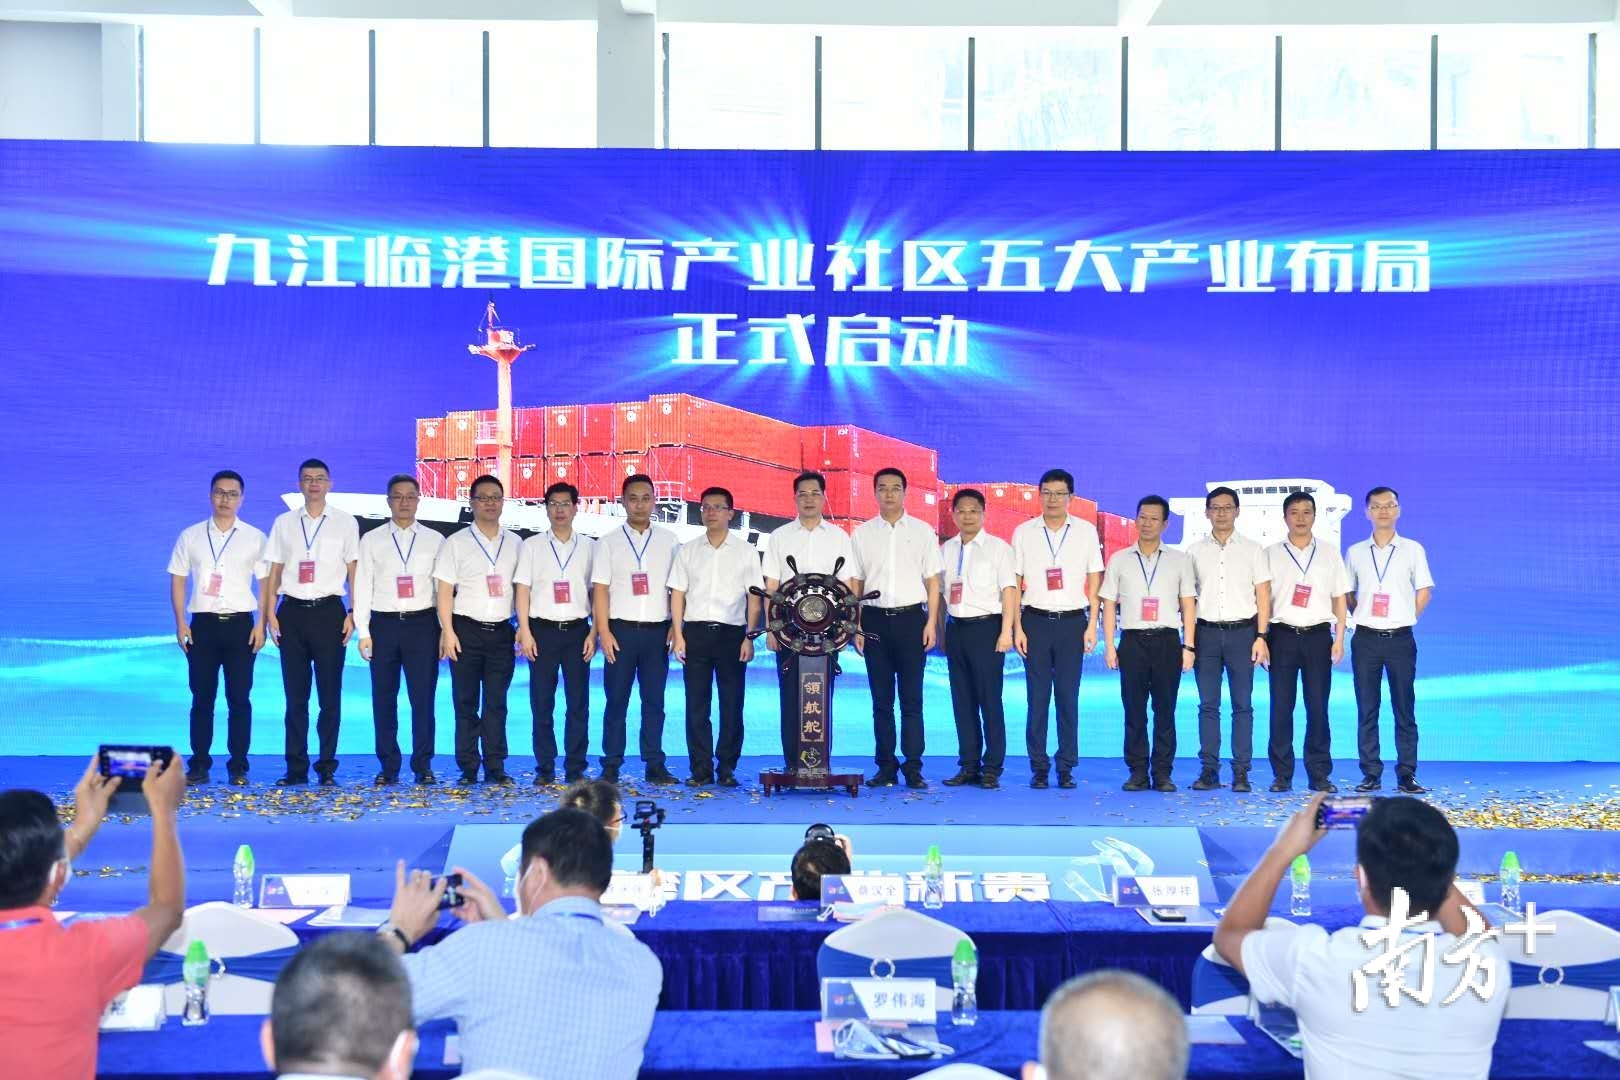  九江临港国际产业社区五大产业布局正式启动。